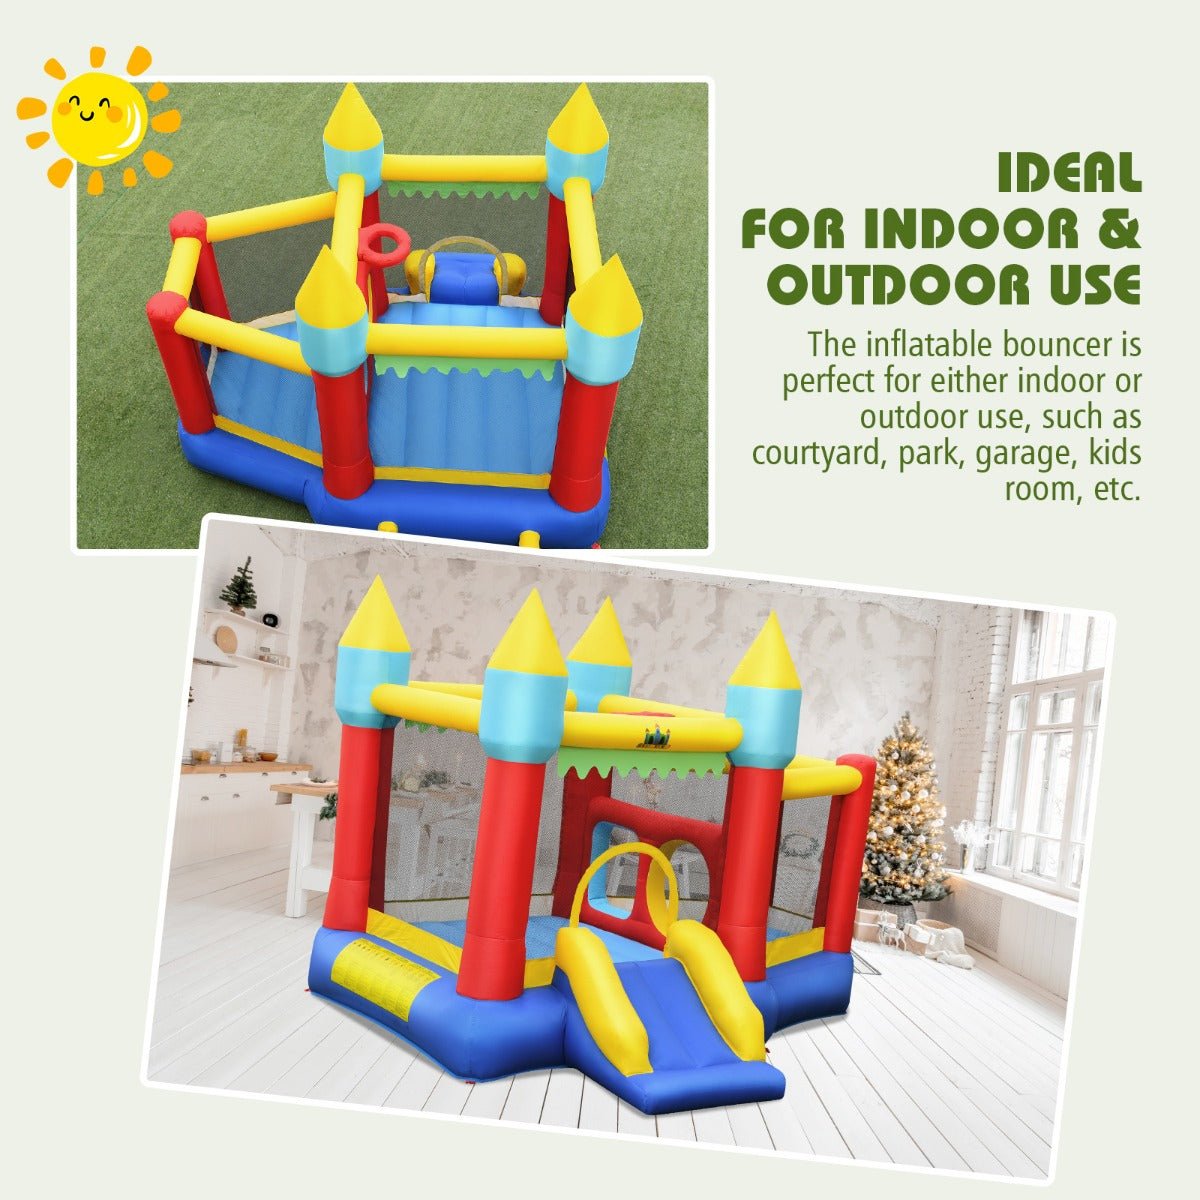 Kids Bounce House with Slide, Basketball & Ocean Balls - Playtime Delight